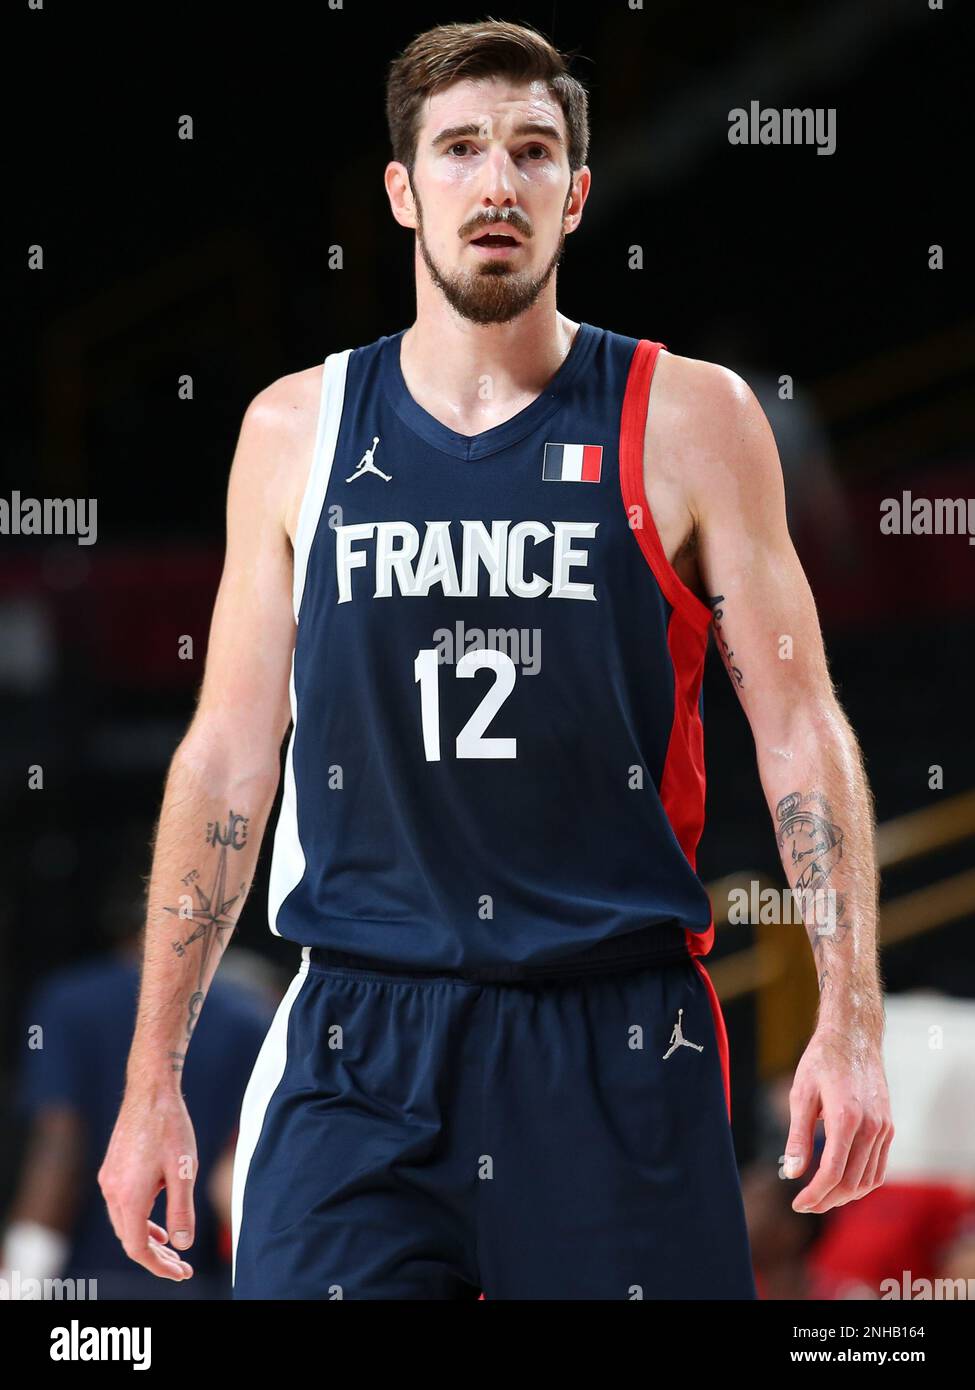 7 AOÛT 2021: Nando de Colo de France dans la finale masculine de basket-ball entre les Etats-Unis et la France aux Jeux Olympiques de Tokyo 2020 (photo de Mickael Chavet/RX) Banque D'Images